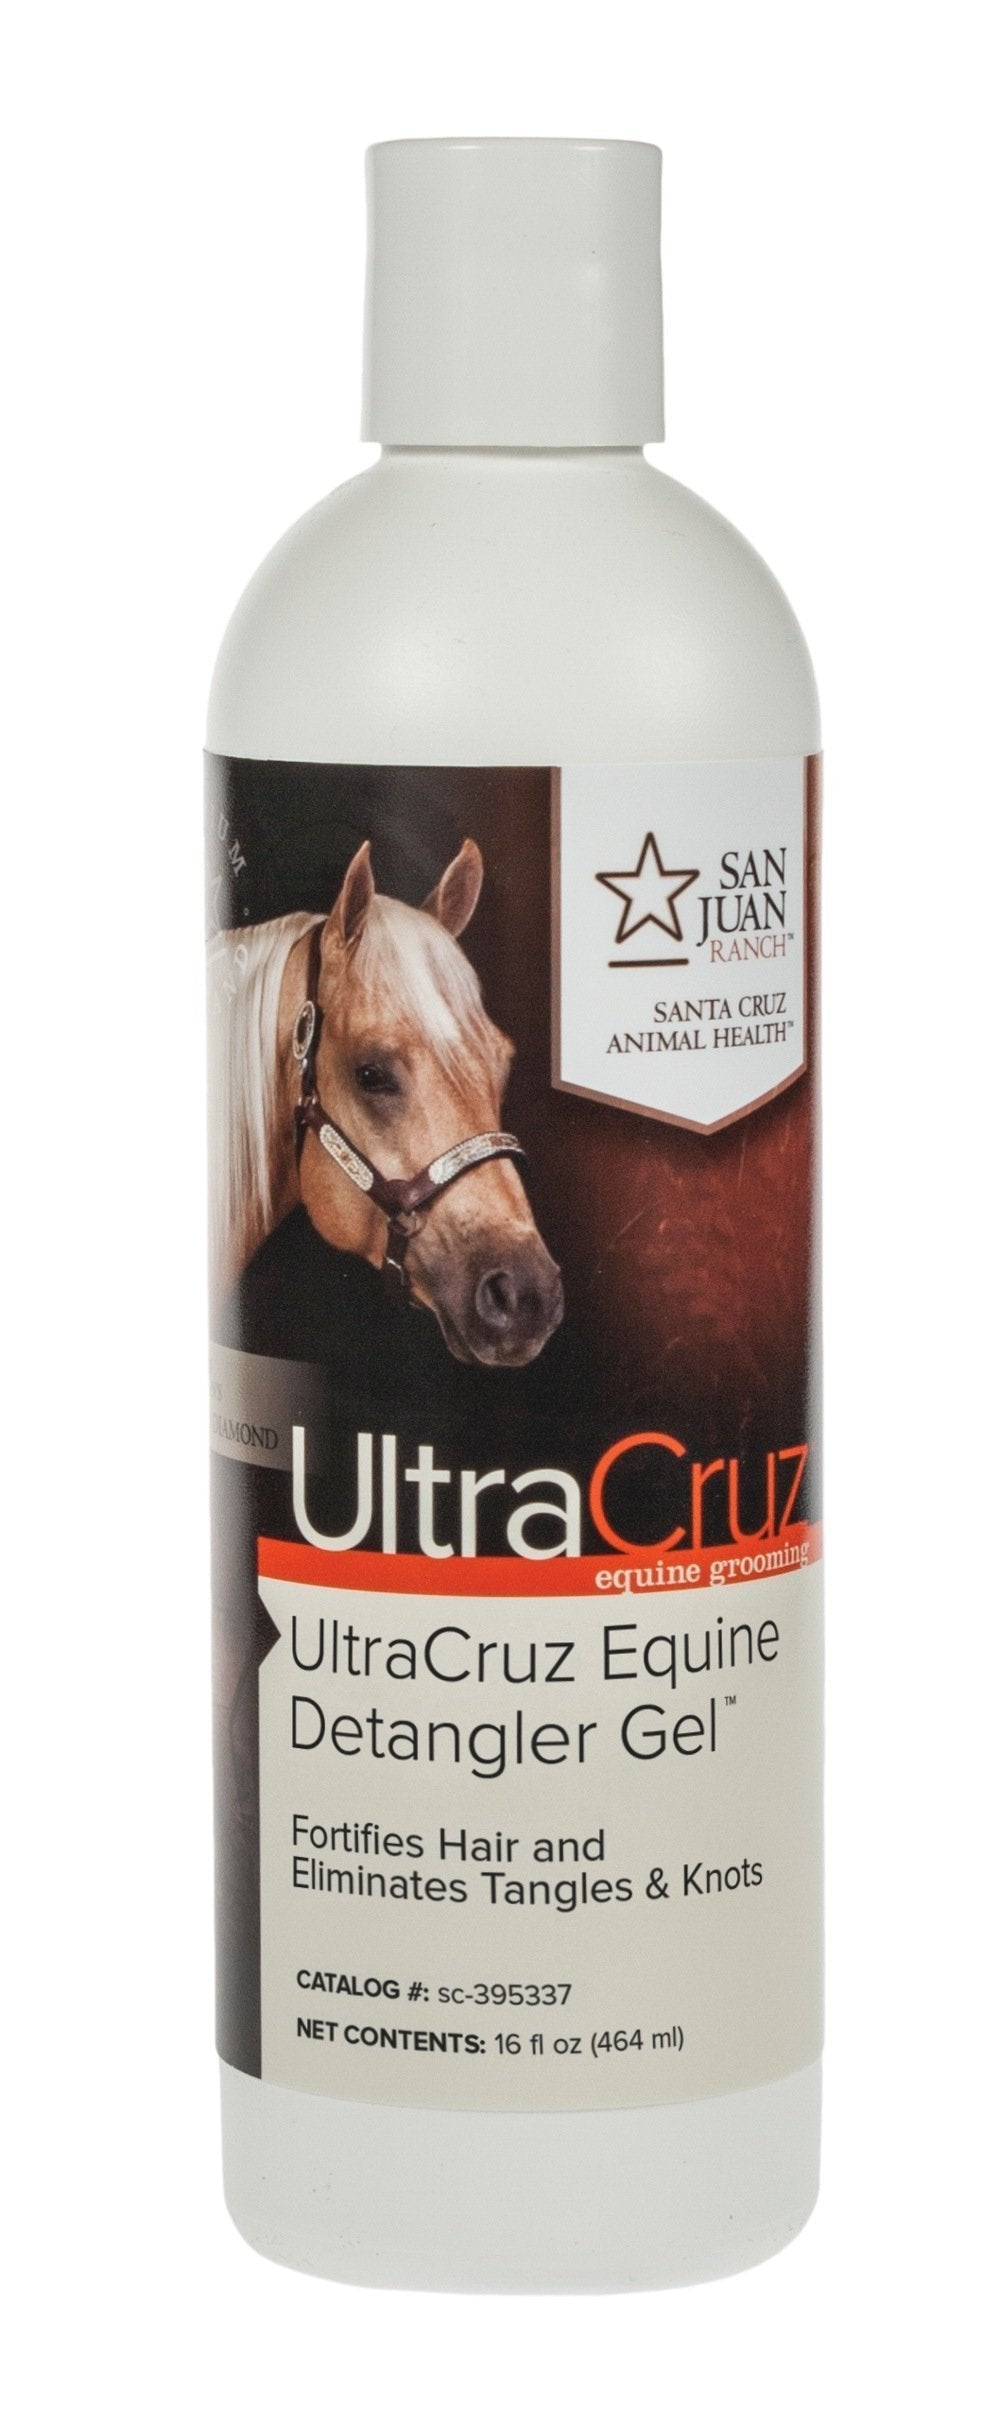 [AUSTRALIA] - UltraCruz Equine Detangler Gel for Horses, 16 oz 